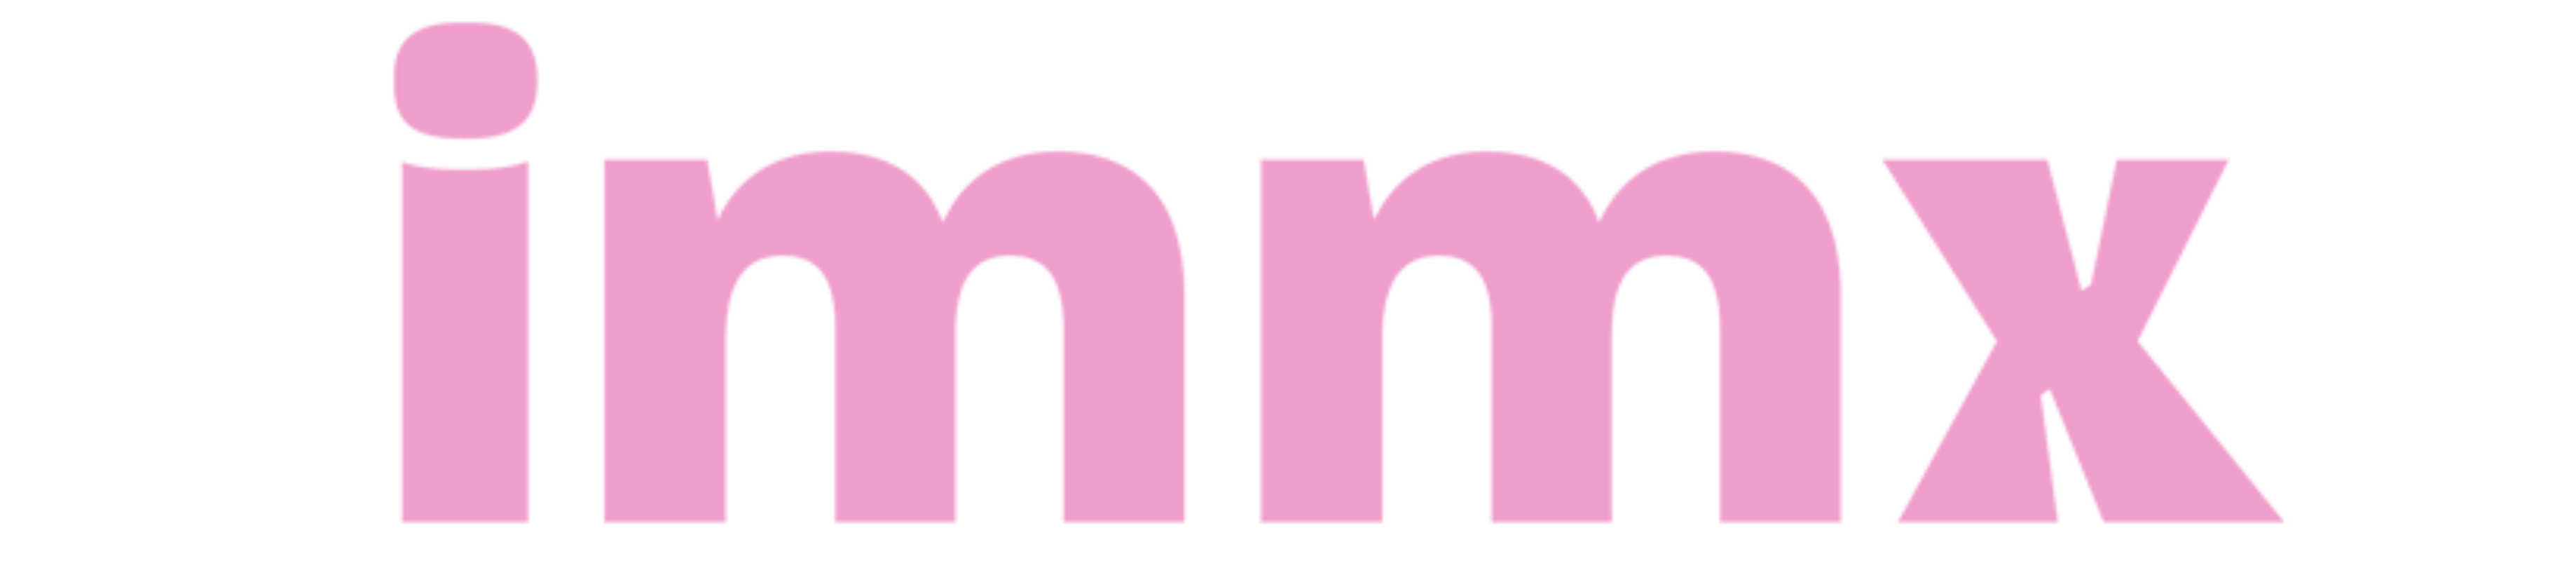 IMMX logo RGB roze ryze